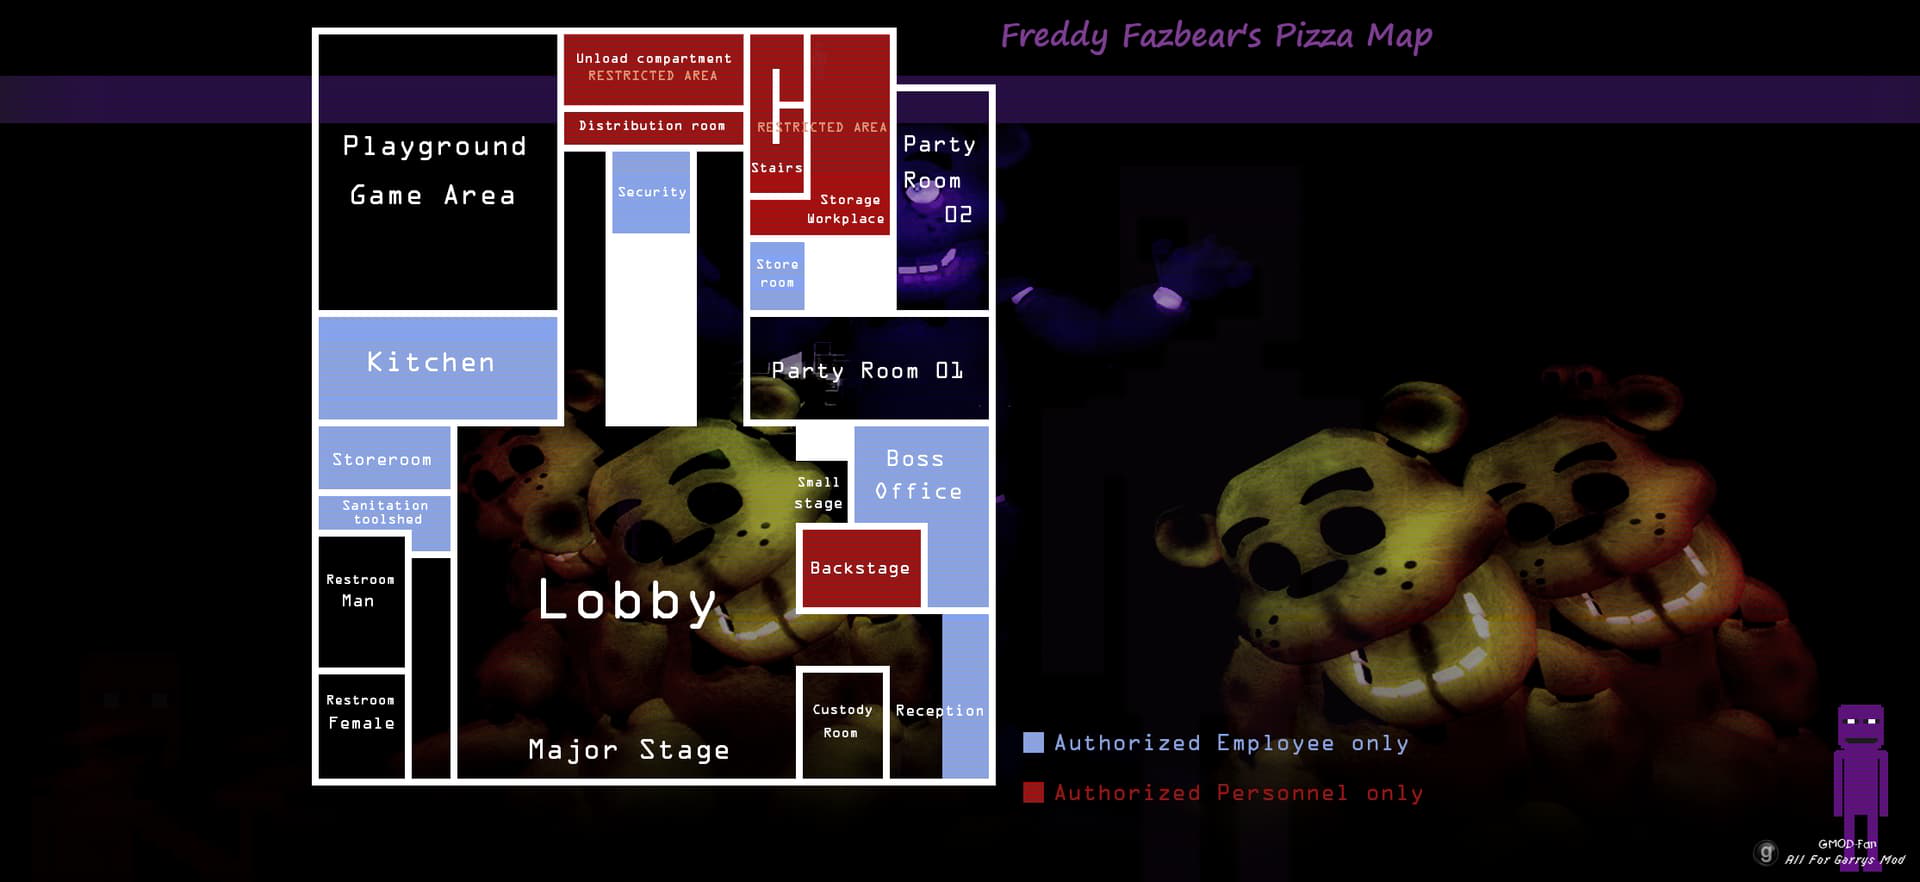 Карта пиццерии фредди фазбер. FNAF 1 Freddy Fazbear's pizza Map. 1984 Пиццерия Фредди. Freddy Fazbear's pizza карта. Карта пиццерии Фредди Фазбера.